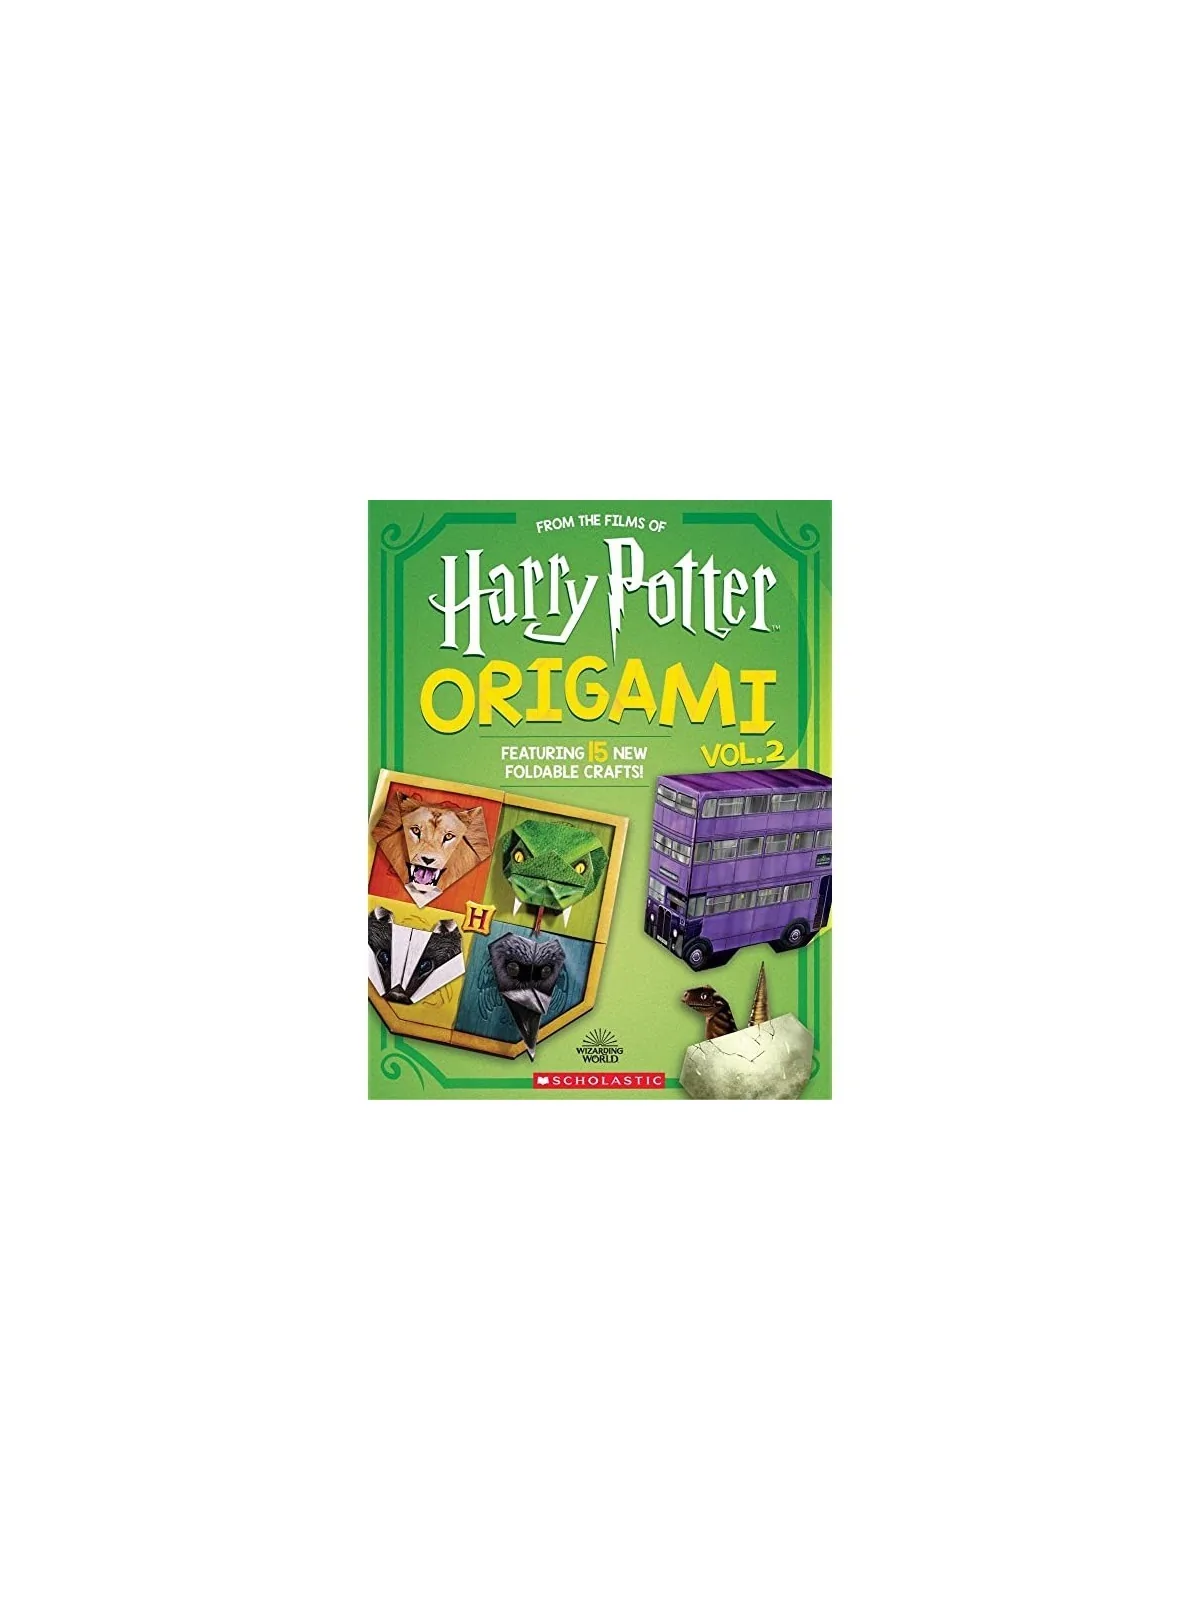 Comprar Harry Potter Origami Vol.2 barato al mejor precio 12,25 € de M